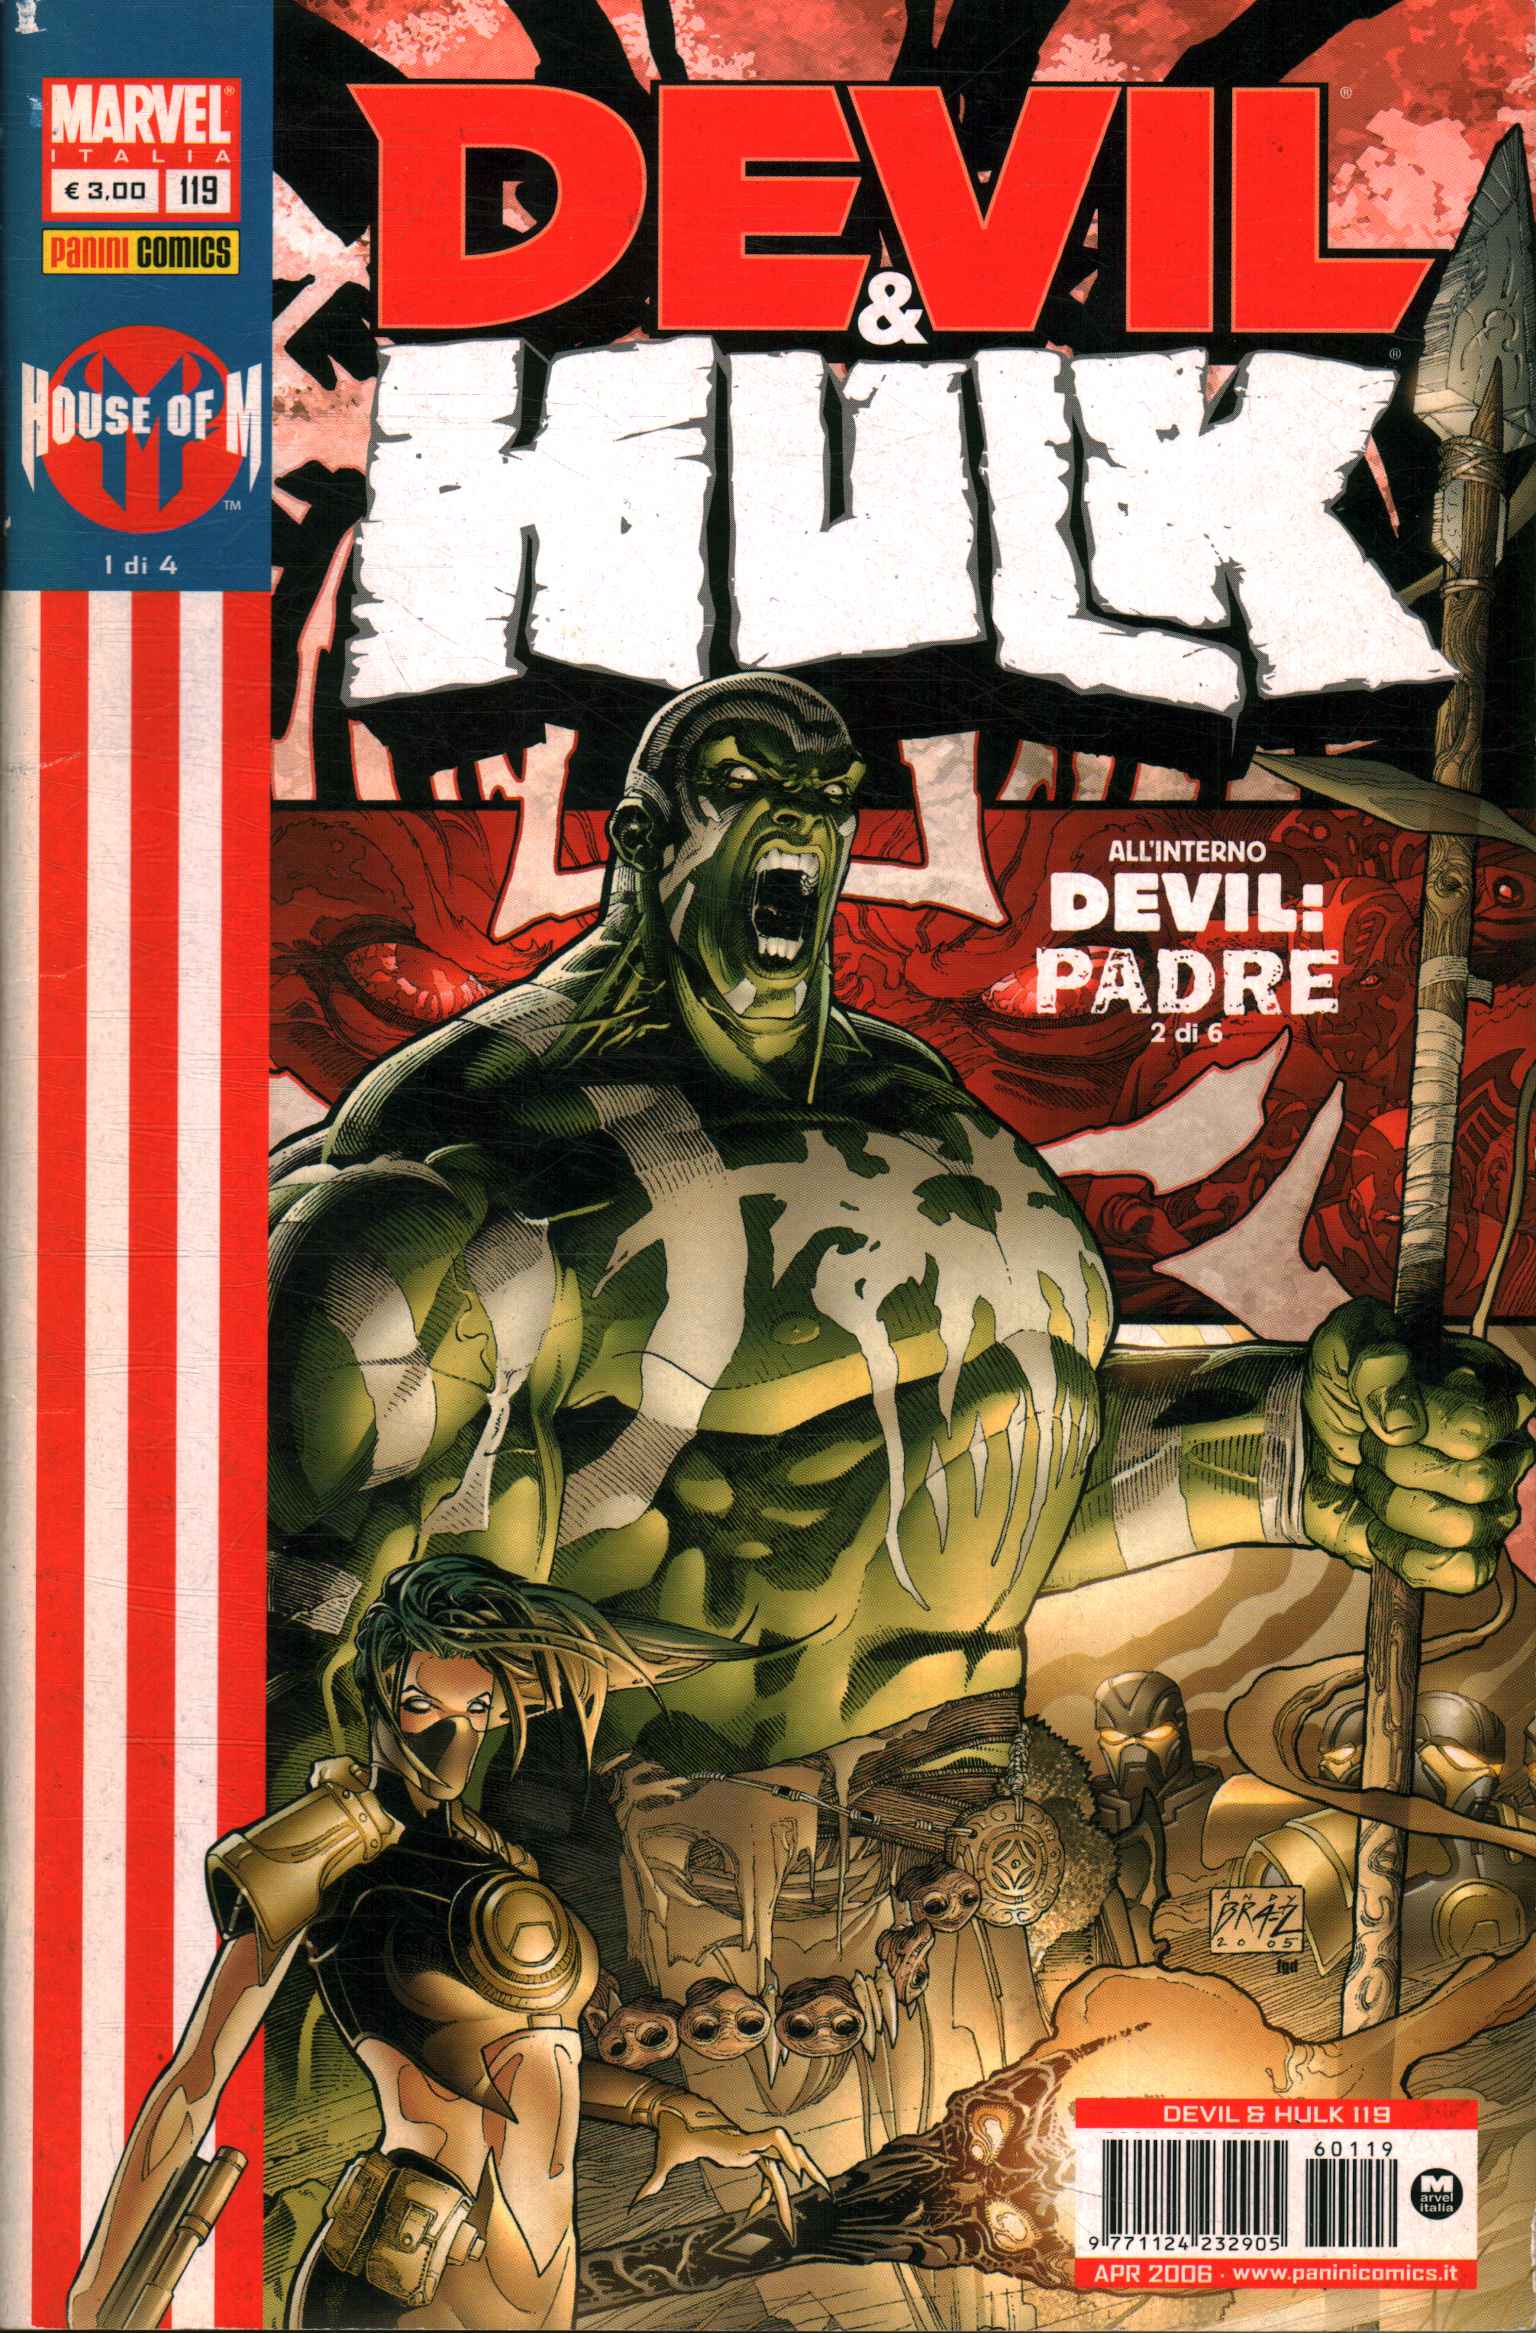 Teufel und Hulk. Komplette Serie (4 Bd